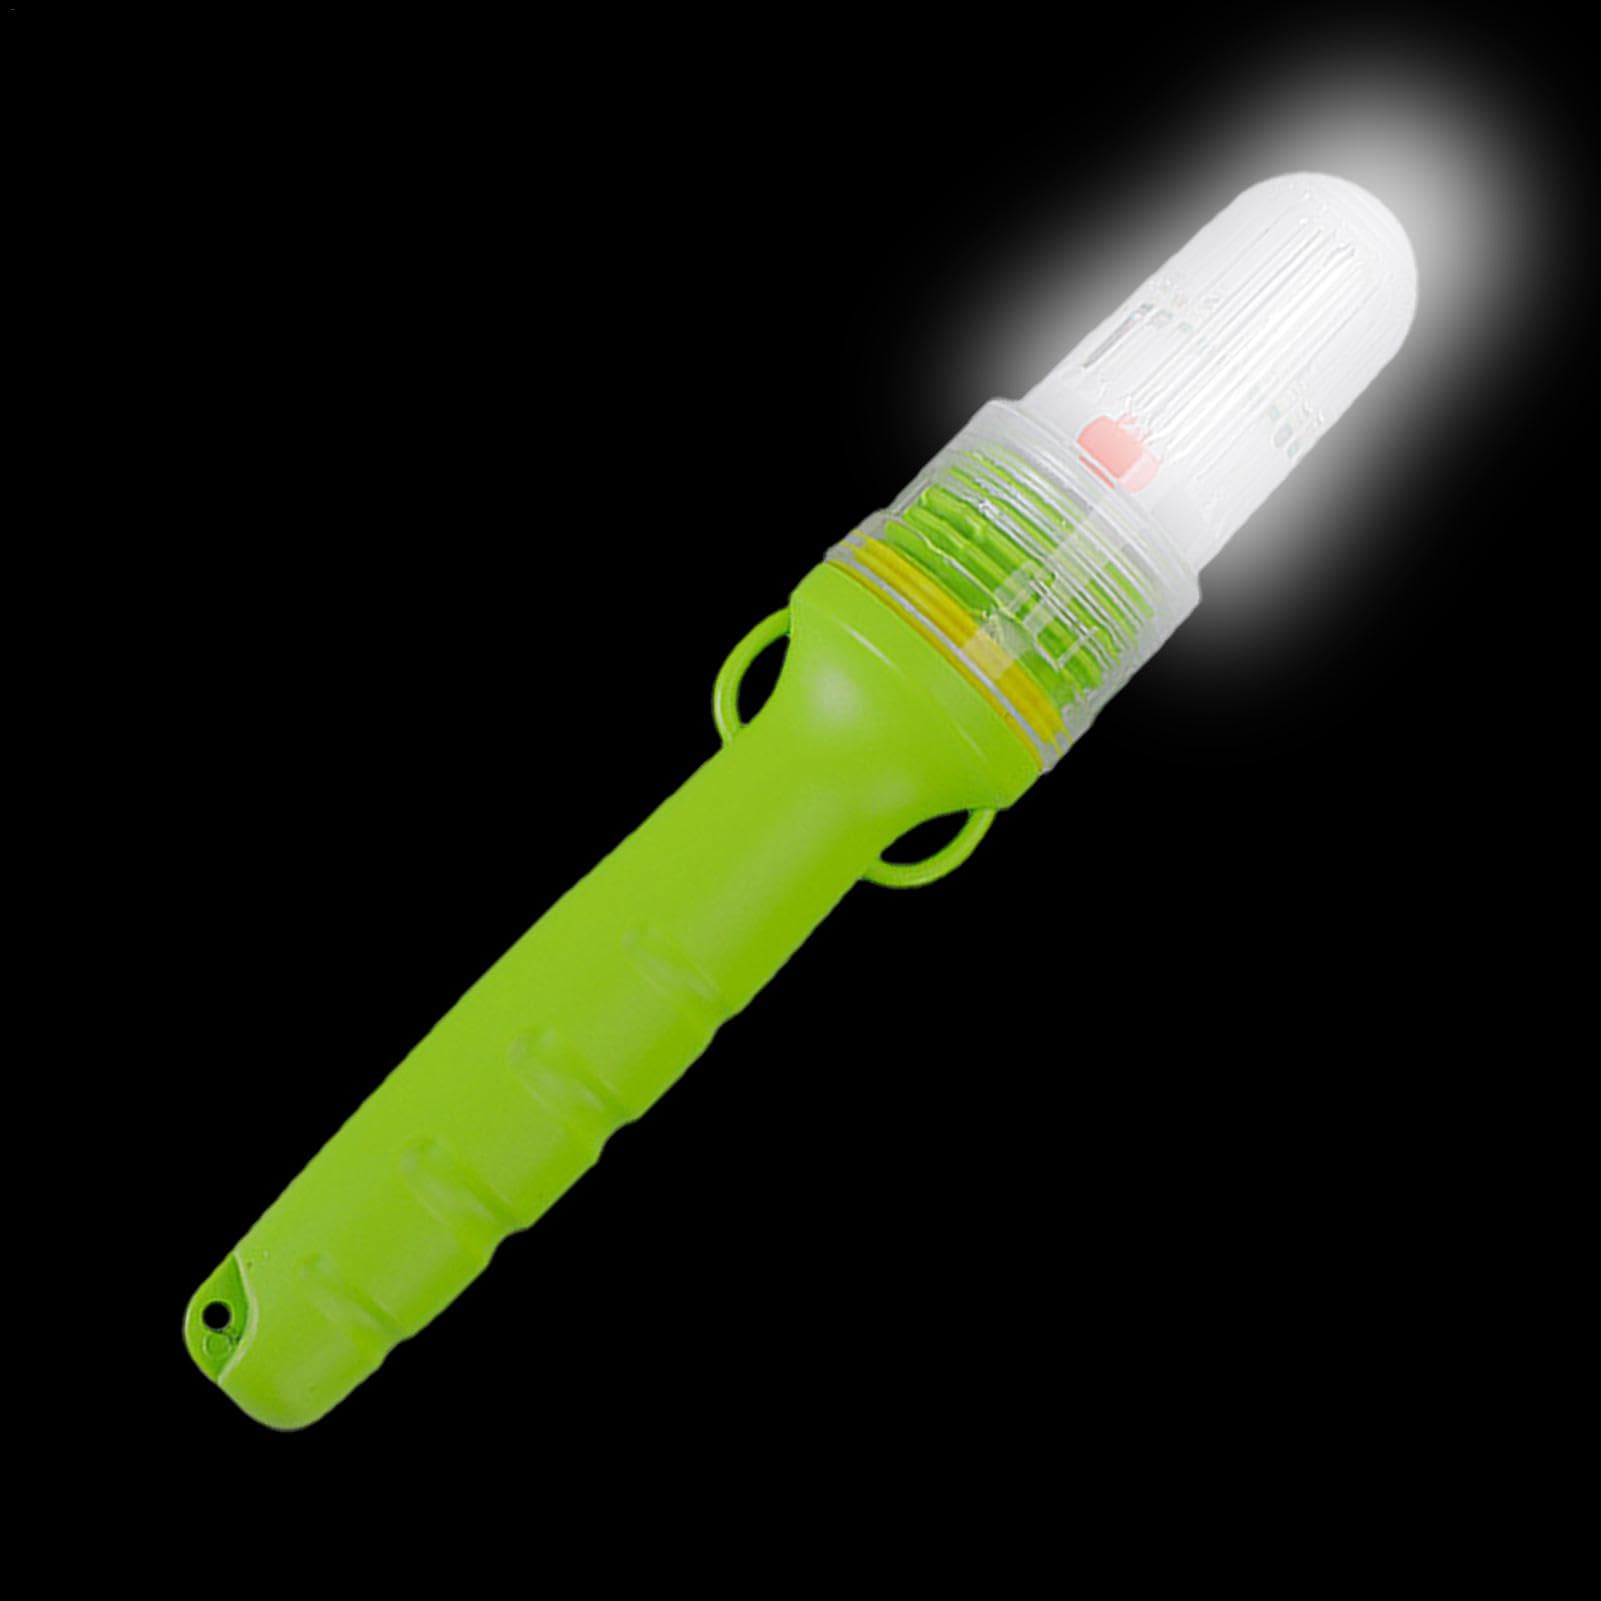 Tewzafiya Beacon LED-Blitzwarnleuchte, LED-Warn-Sicherheitsblinkleuchte - Warnleuchten Tragbare Leuchtfeuer | Intelligente Lichtsteuerung, Blitzlicht, hohe Sichtbarkeit für das Meeresangeln von Tewzafiya